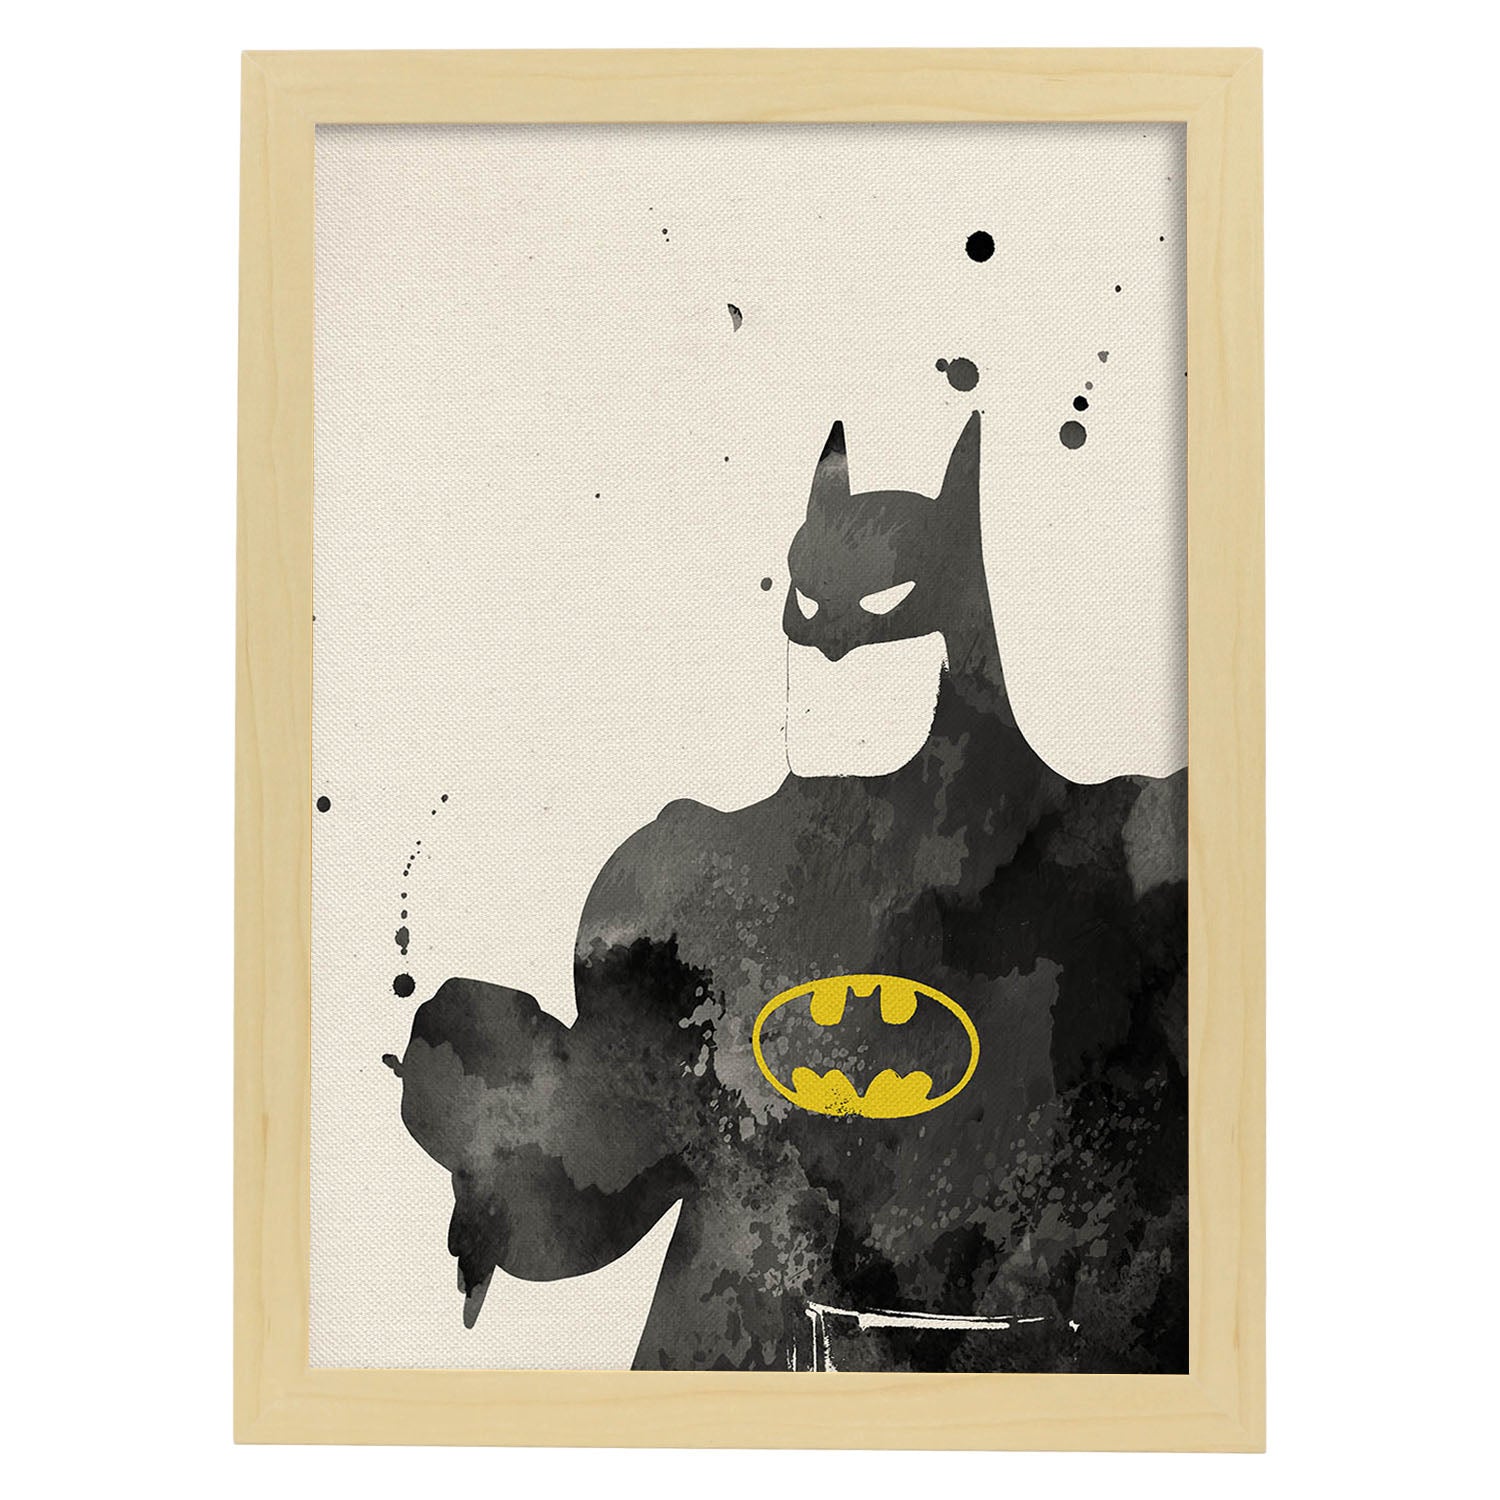 Poster de Batman 2. Láminas de cine, películas, y actores. Posters de películas antiguas con estilo acuarela.-Artwork-Nacnic-A4-Marco Madera clara-Nacnic Estudio SL